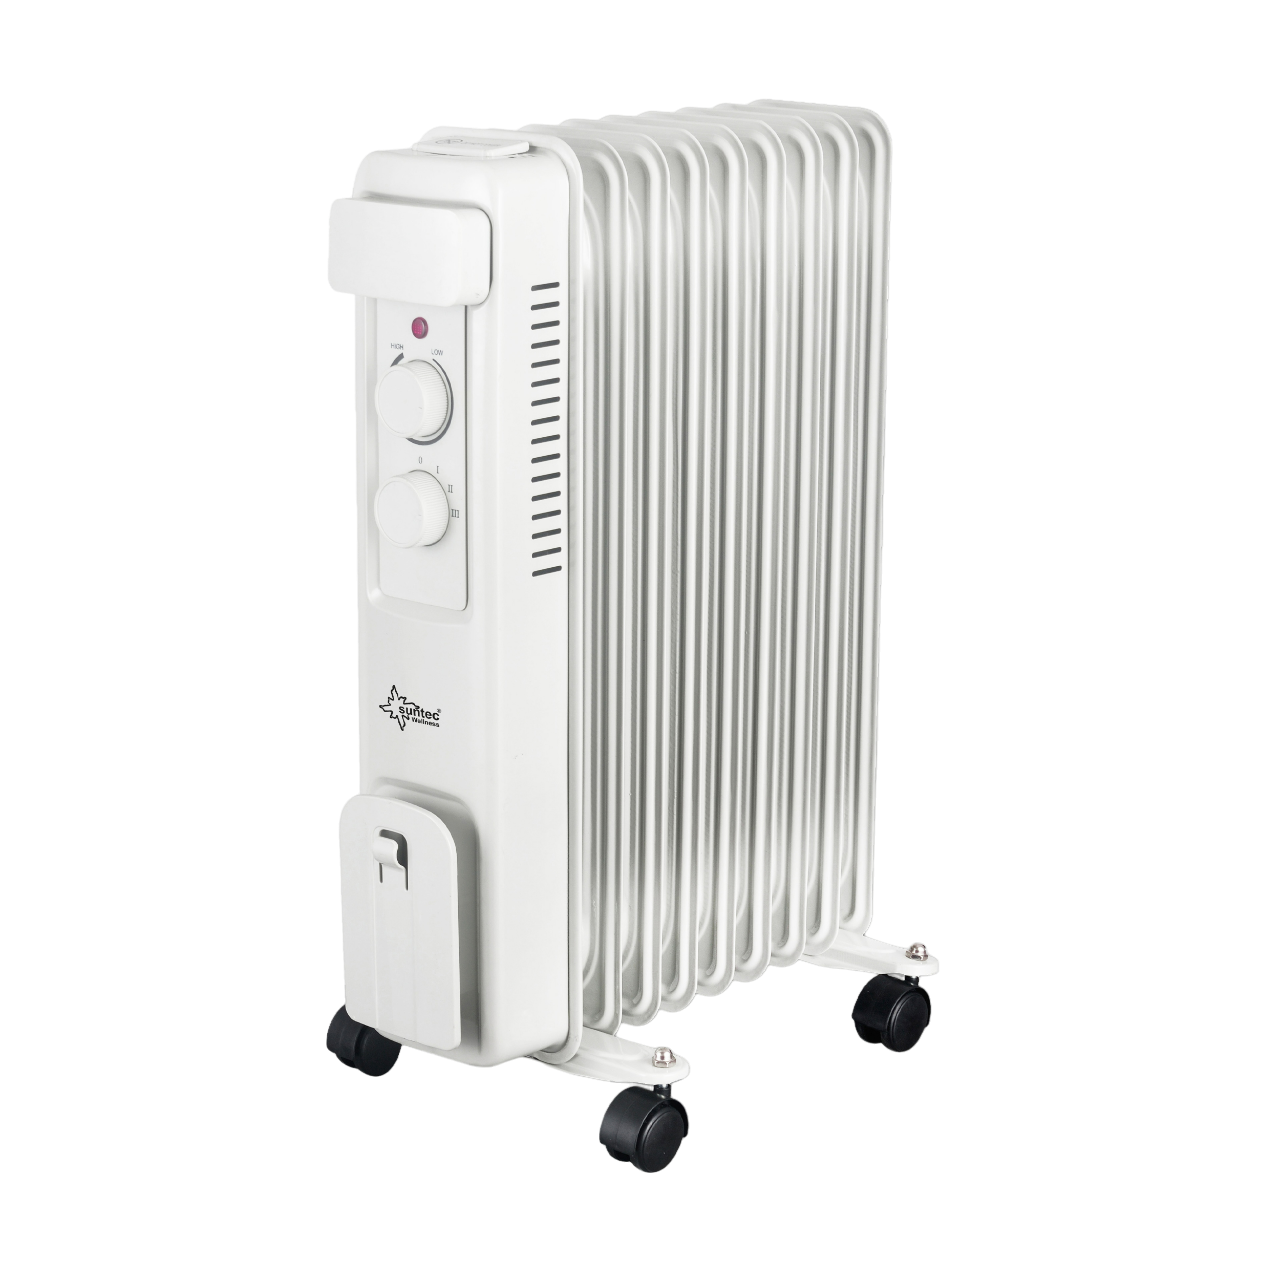 Pro Öl-Radiator Ultra Hot Watt, Radiator 2000 25 SUNTEC Power m²) Heater (2000 Raumgröße: Safe